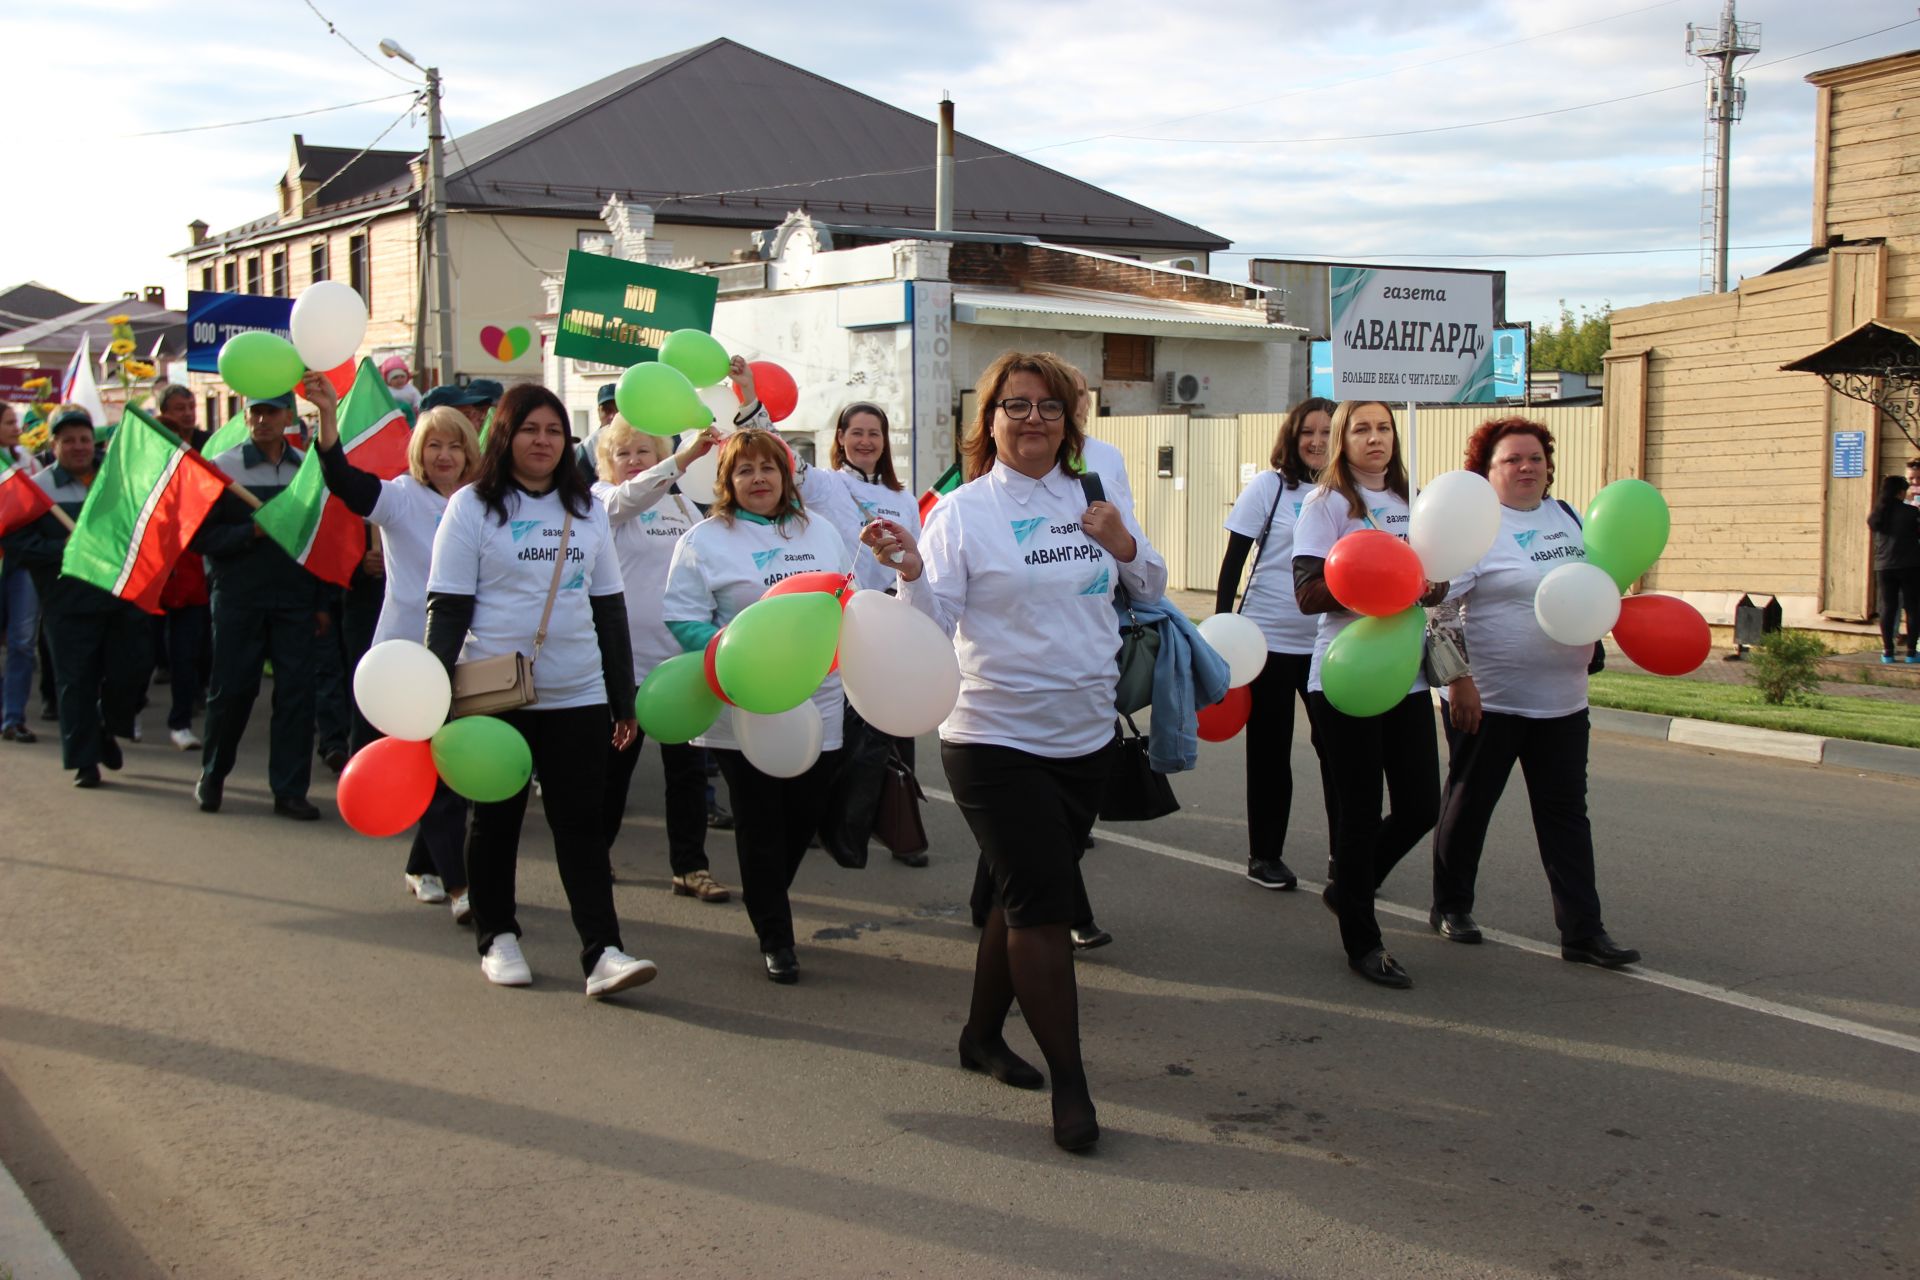 Празднование Дня Республики Татарстан и Дня города в Тетюшах